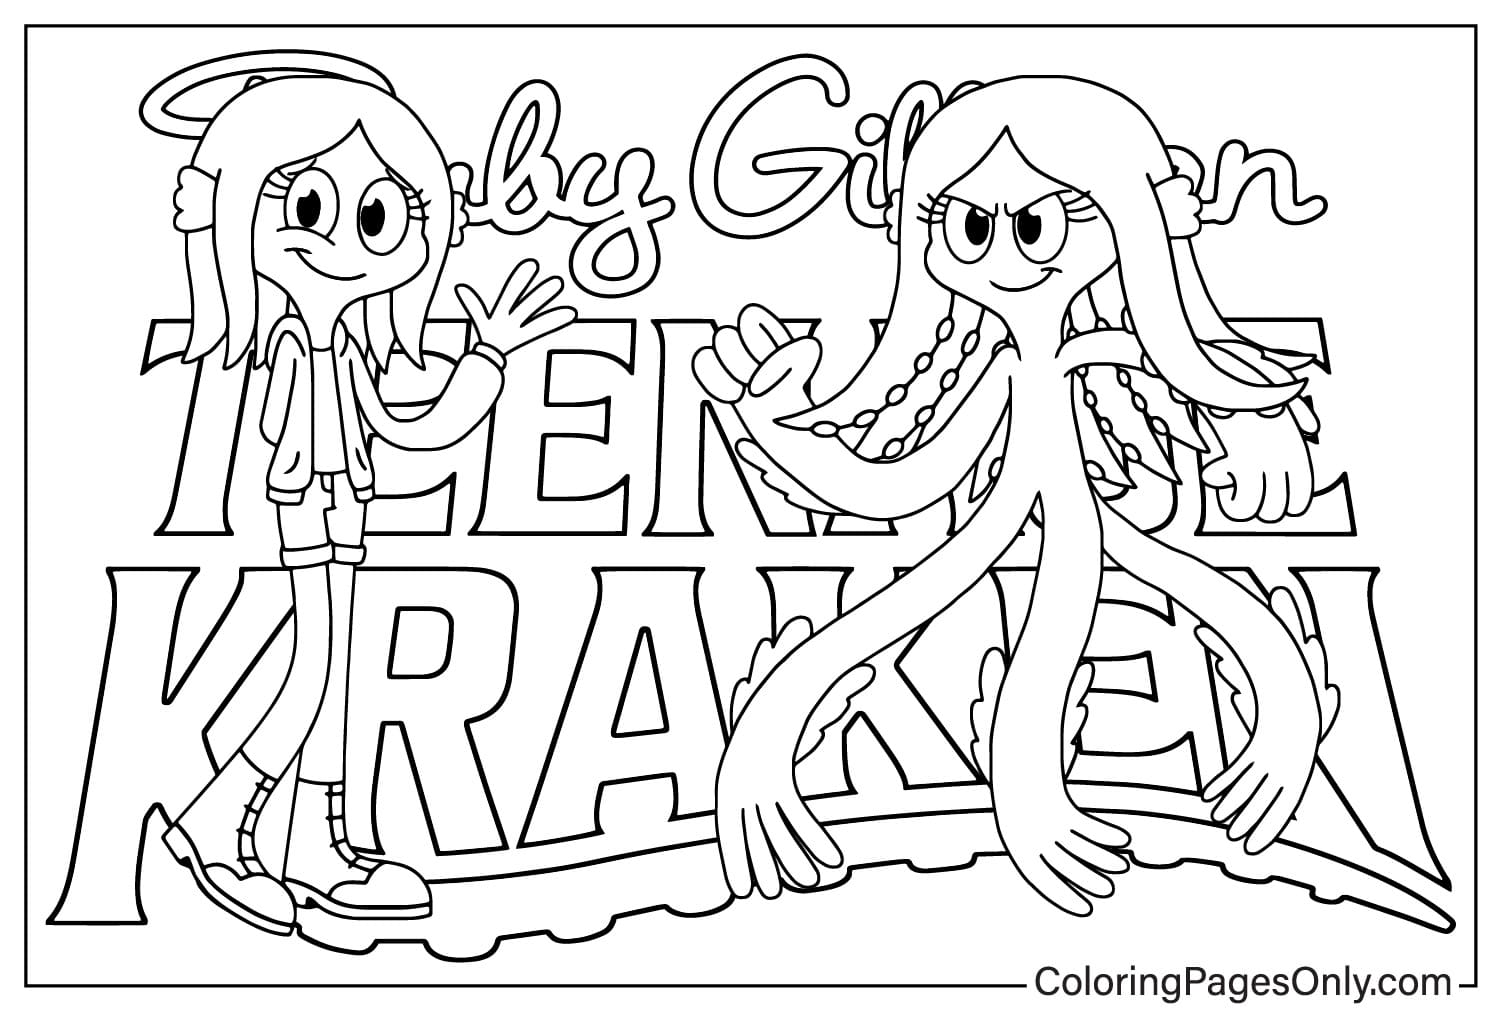 Página para colorir de Ruby Gillman Teenage Kraken para imprimir de Ruby Gillman Teenage Kraken